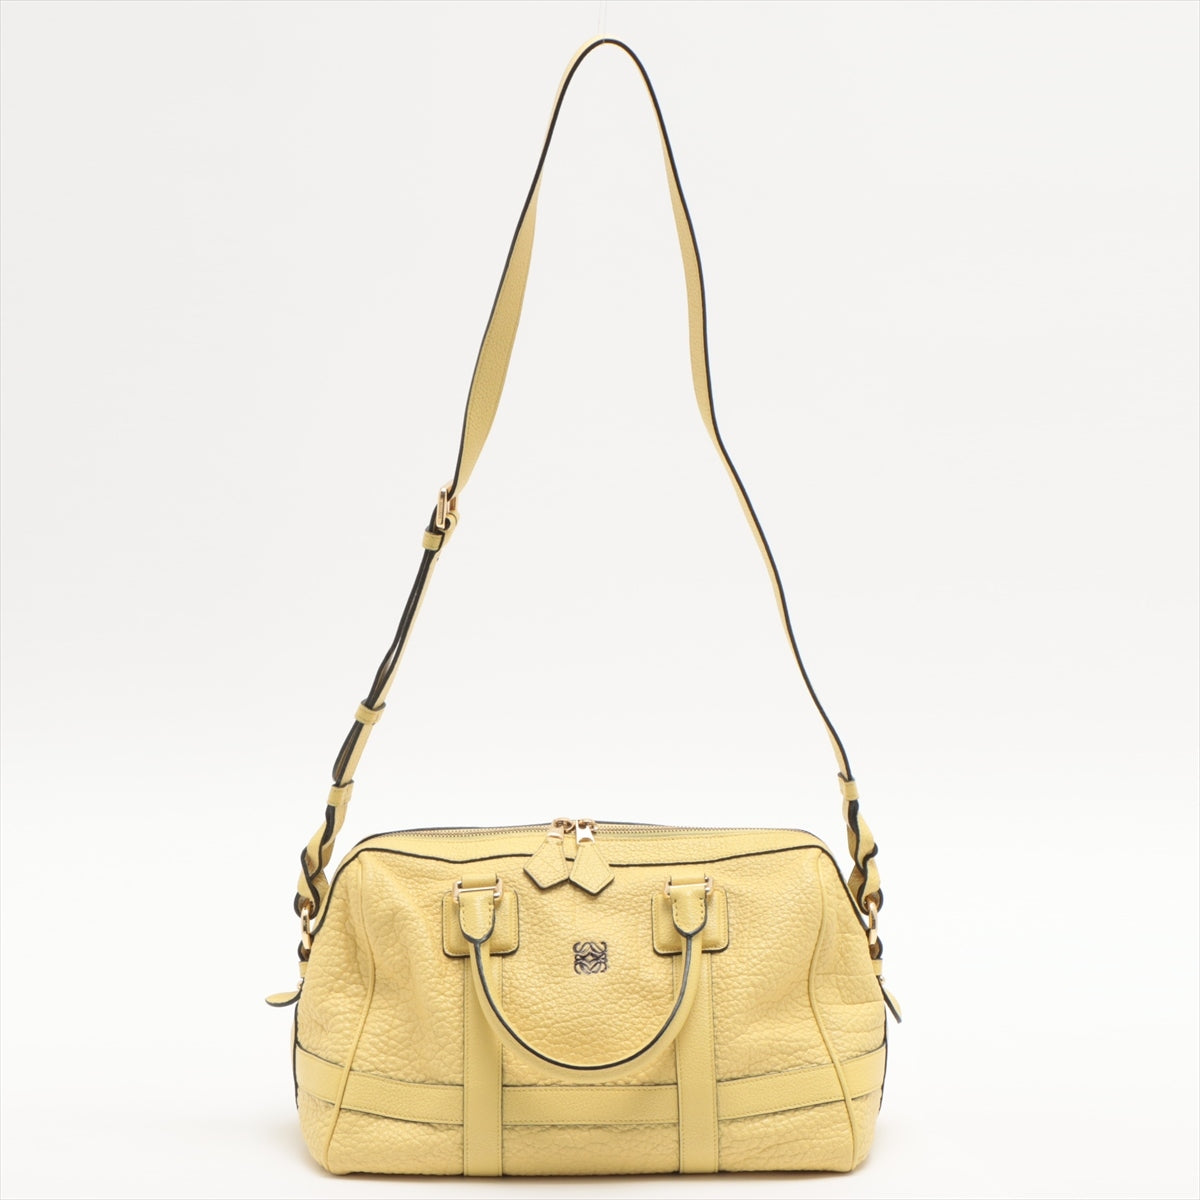 Loewe Leather 2way handbag Yellow